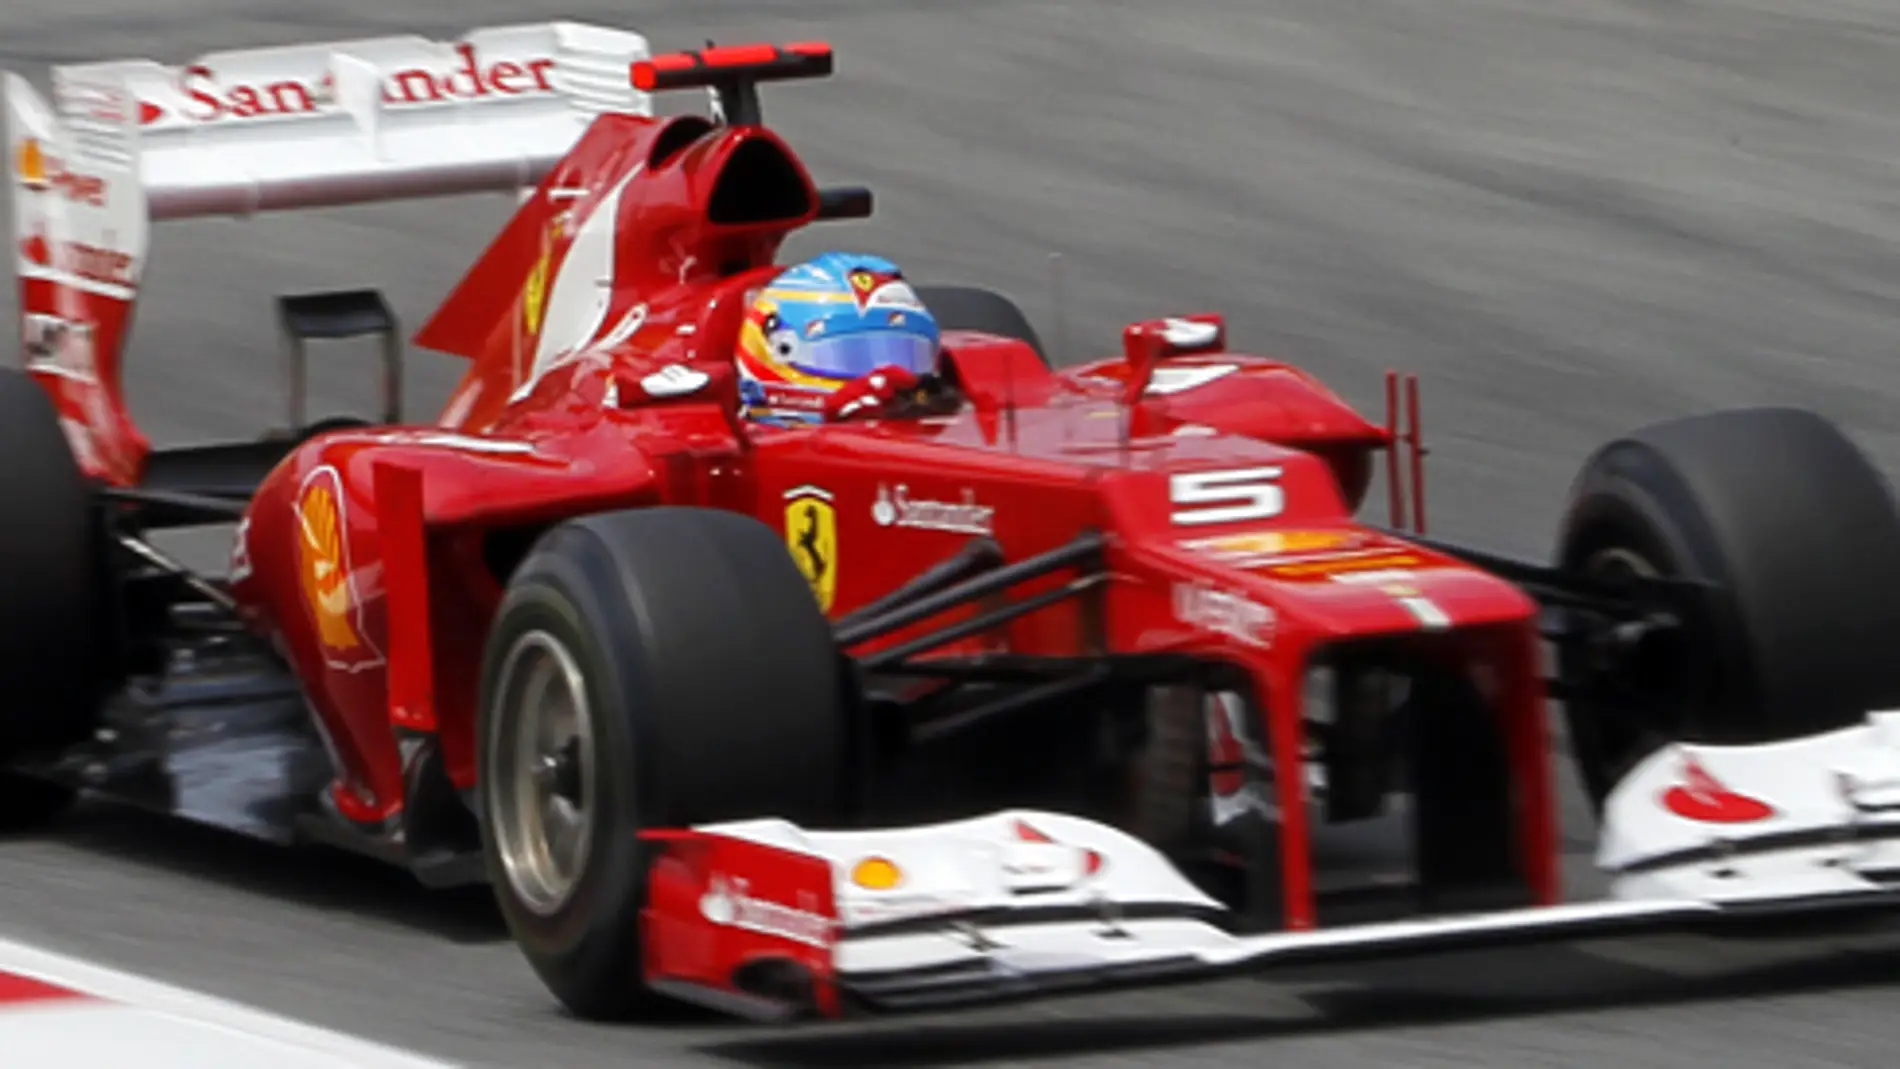 Superdestacado Ferrari Fórmula 1 genérico